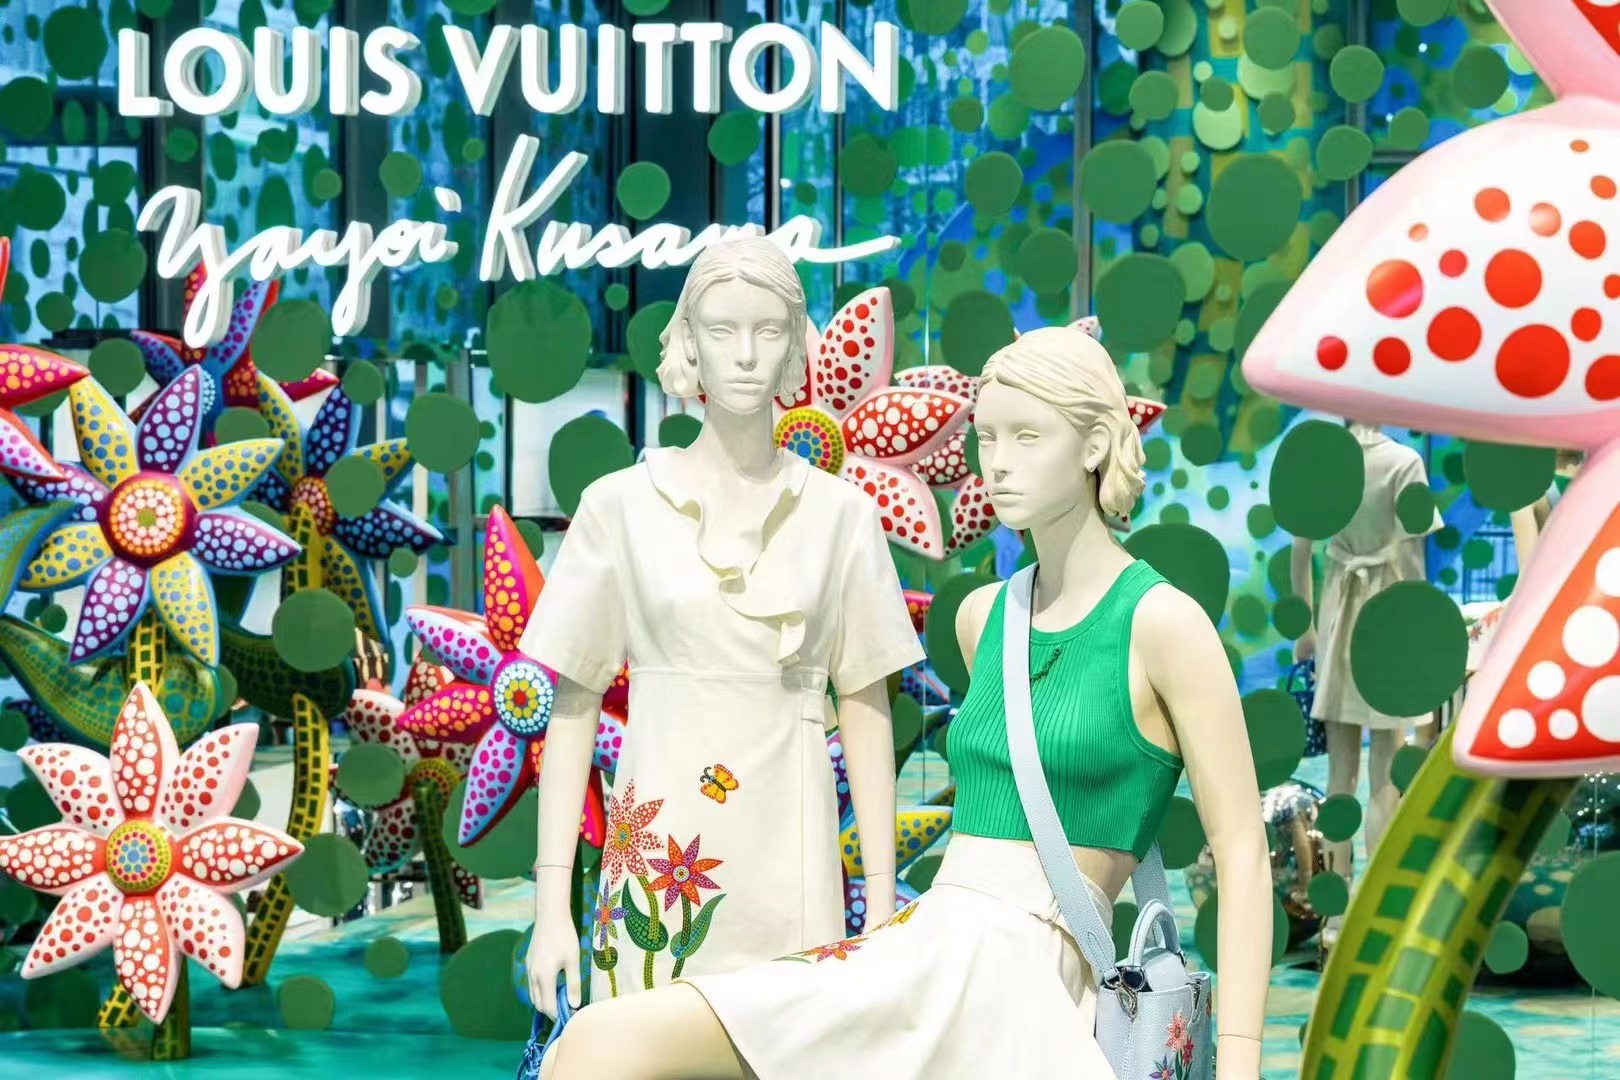 Louis Vuitton Yayoi Kusama Drop 2 Pop-up Mar 31 – Apr 9 2023 Guangzhou Hangzhou